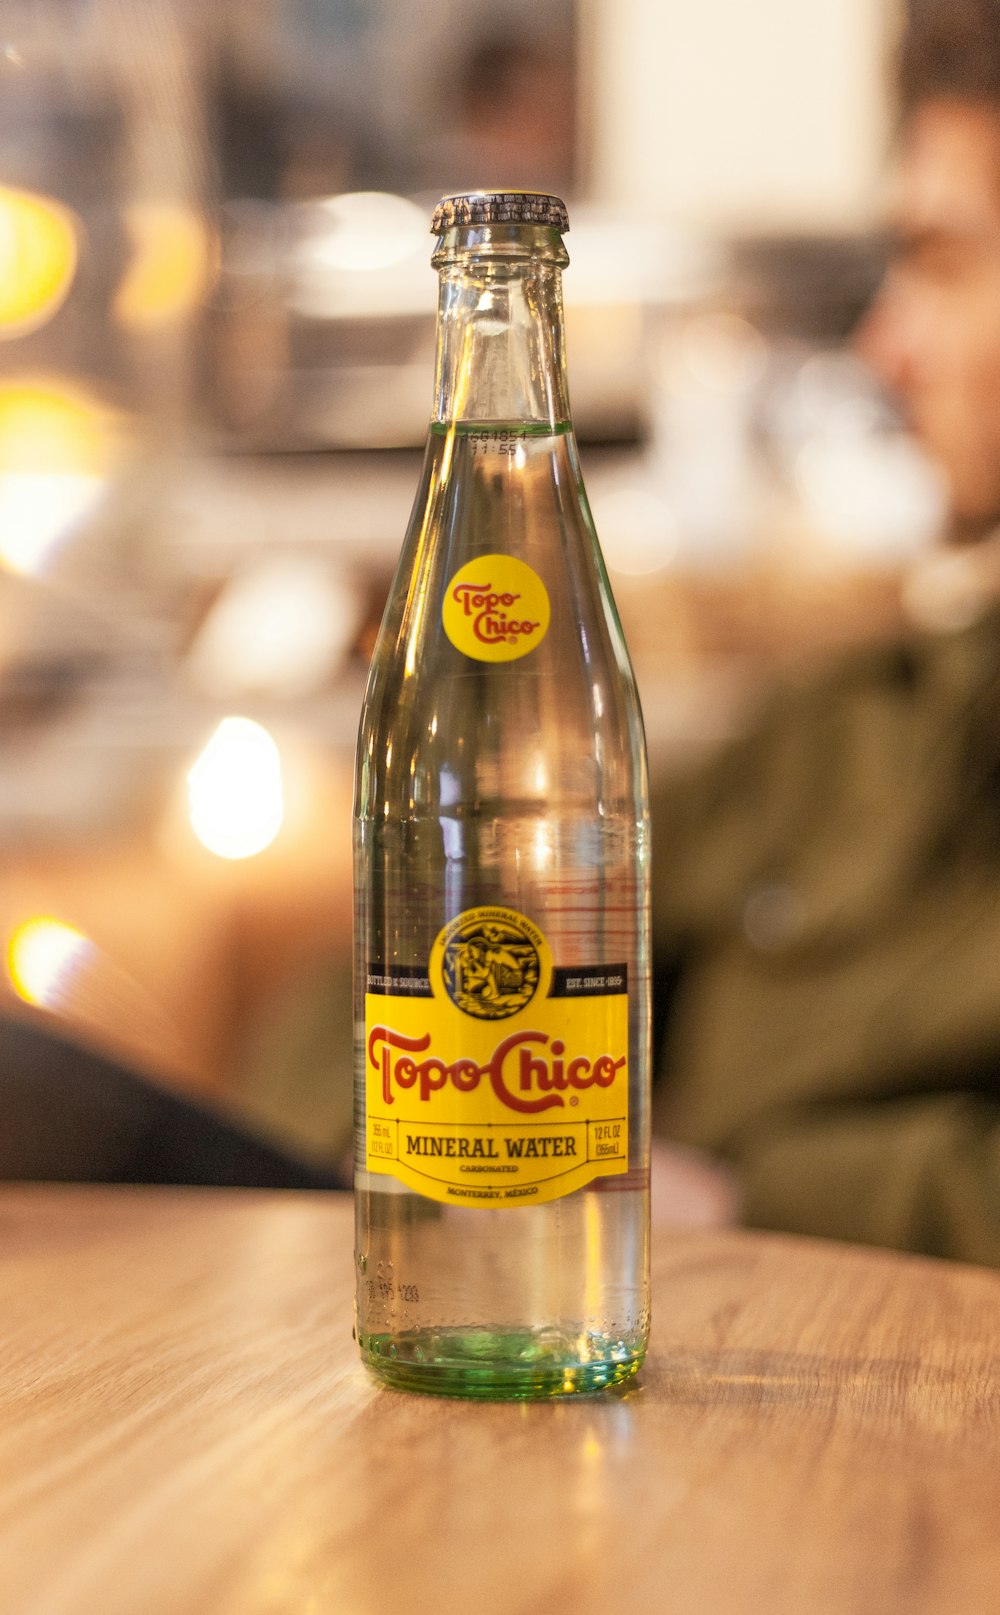 Topo Chico glass bottle